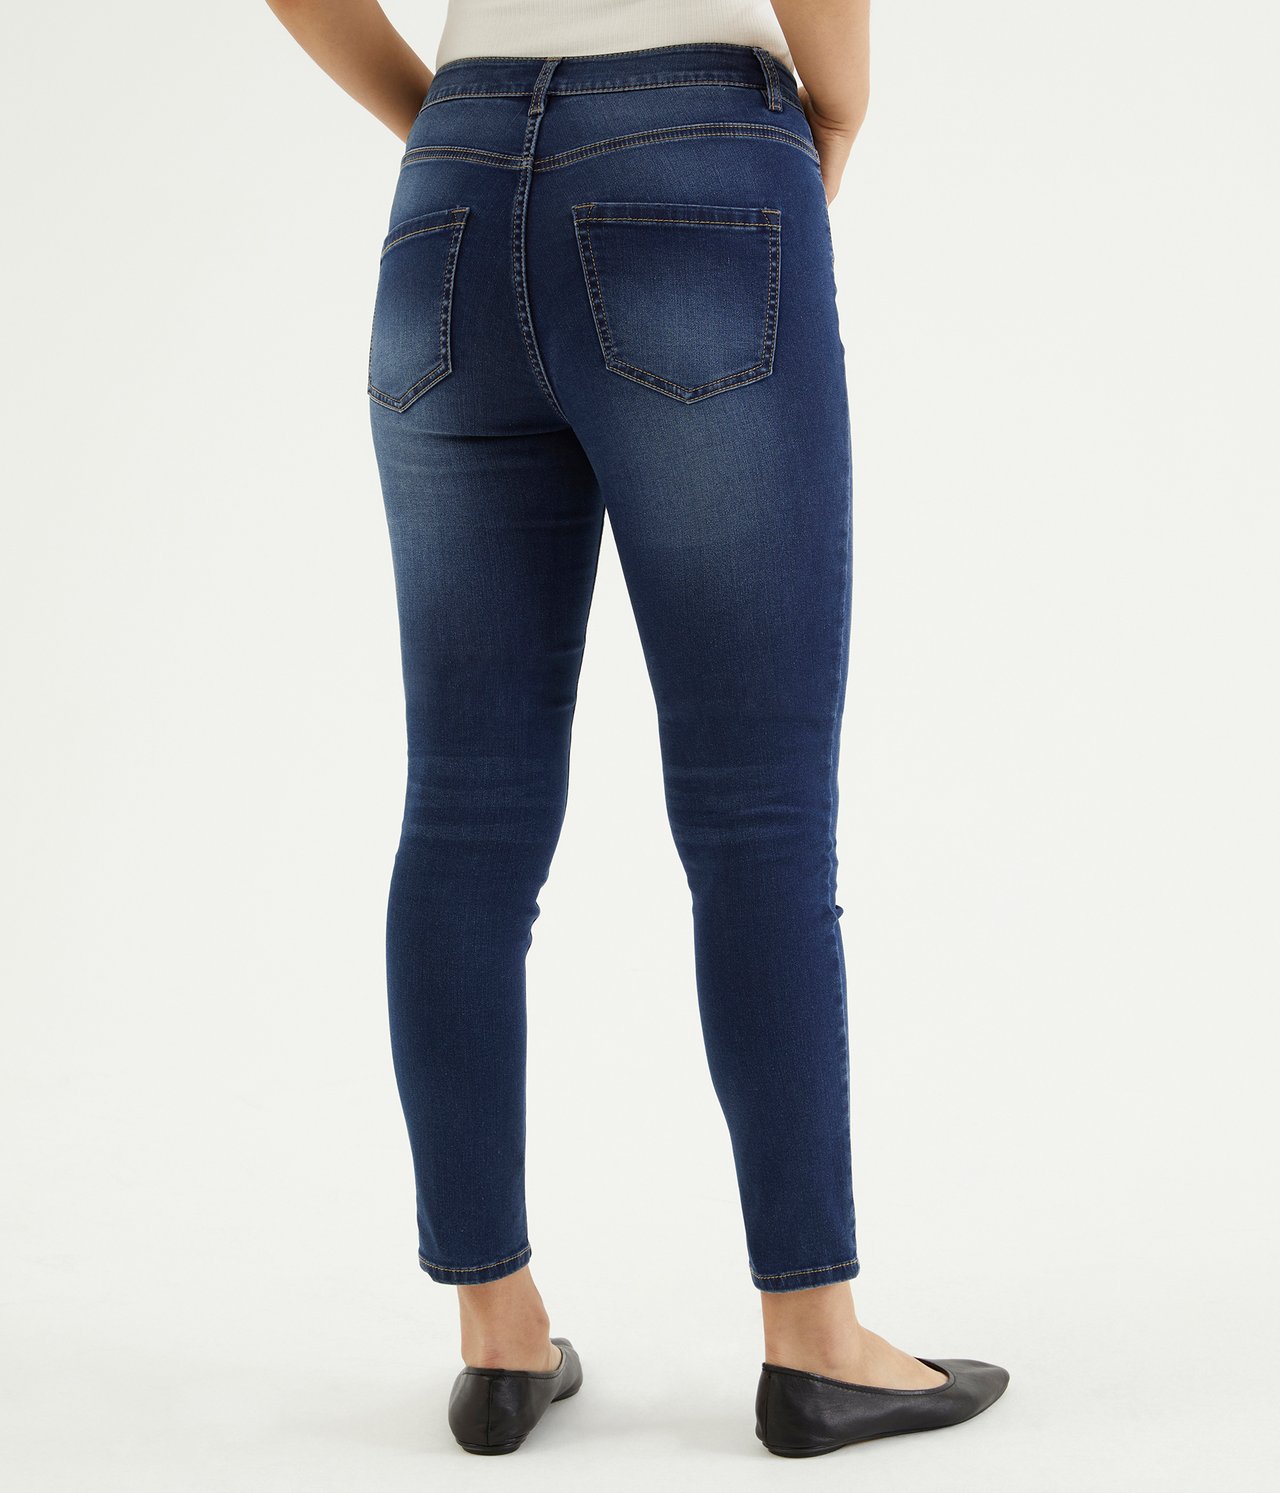 Super slim jeans short leg Mørk denim - null - 2